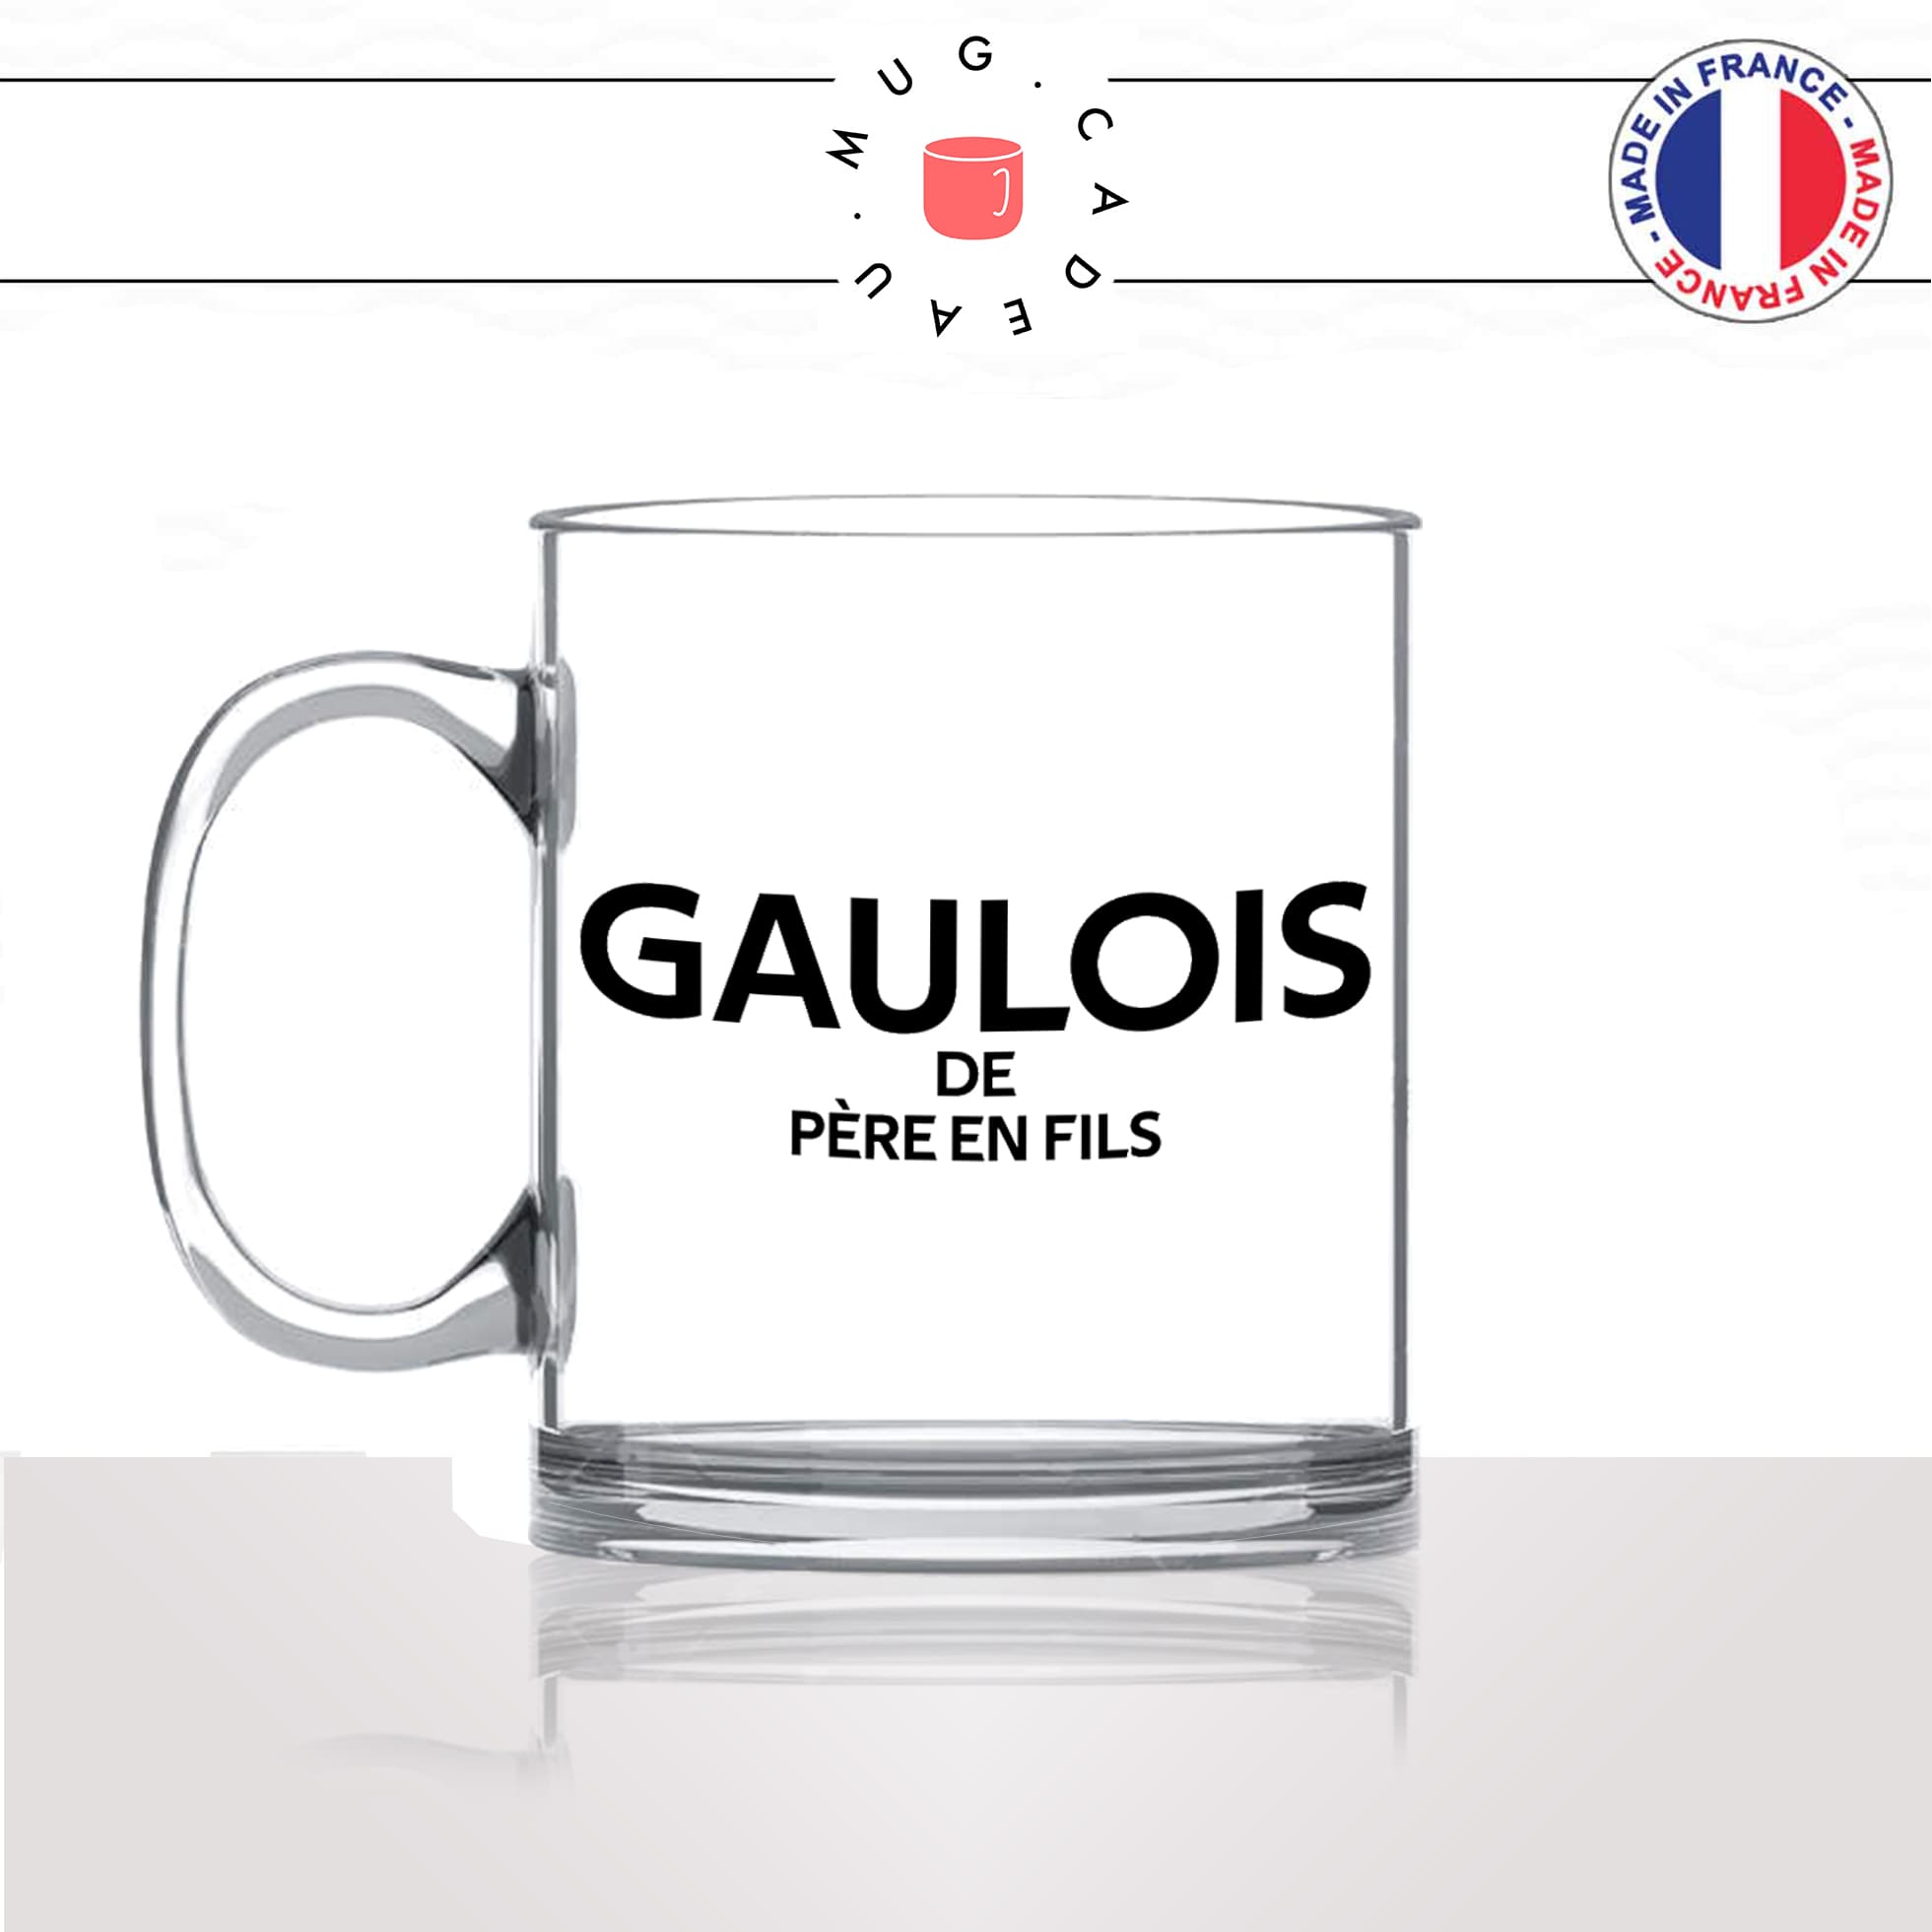 mug-tasse-en-verre-transparent-glass-coq-gaulois-de-pere-en-fils-guerre-homme-pays-francais-france-histoitre-gaule-idée-cadeau-originale-fun